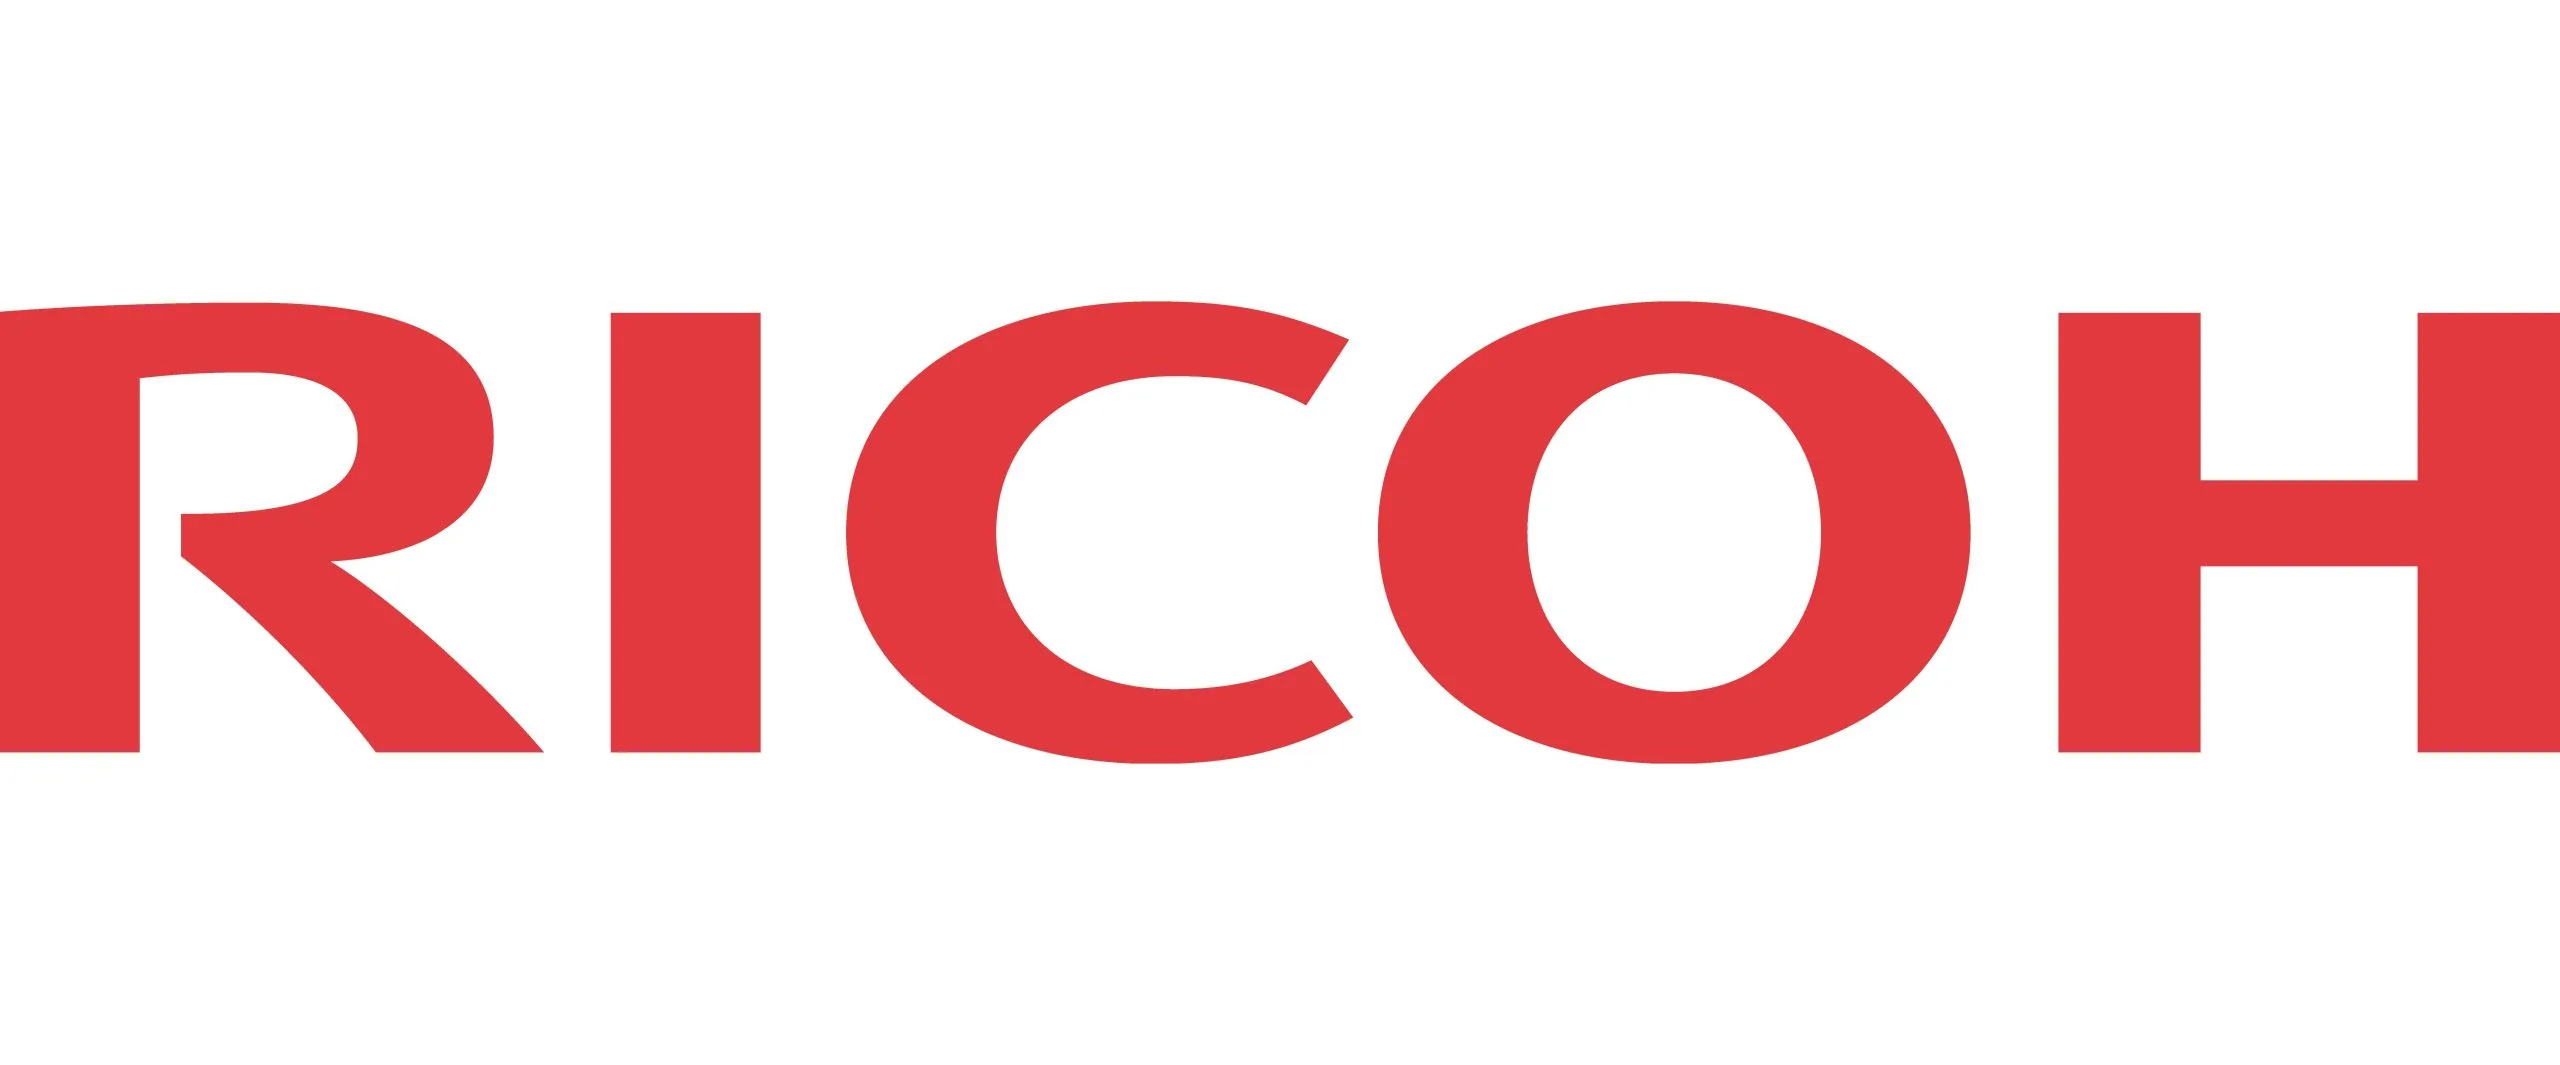 Ricoh-logo-scaled